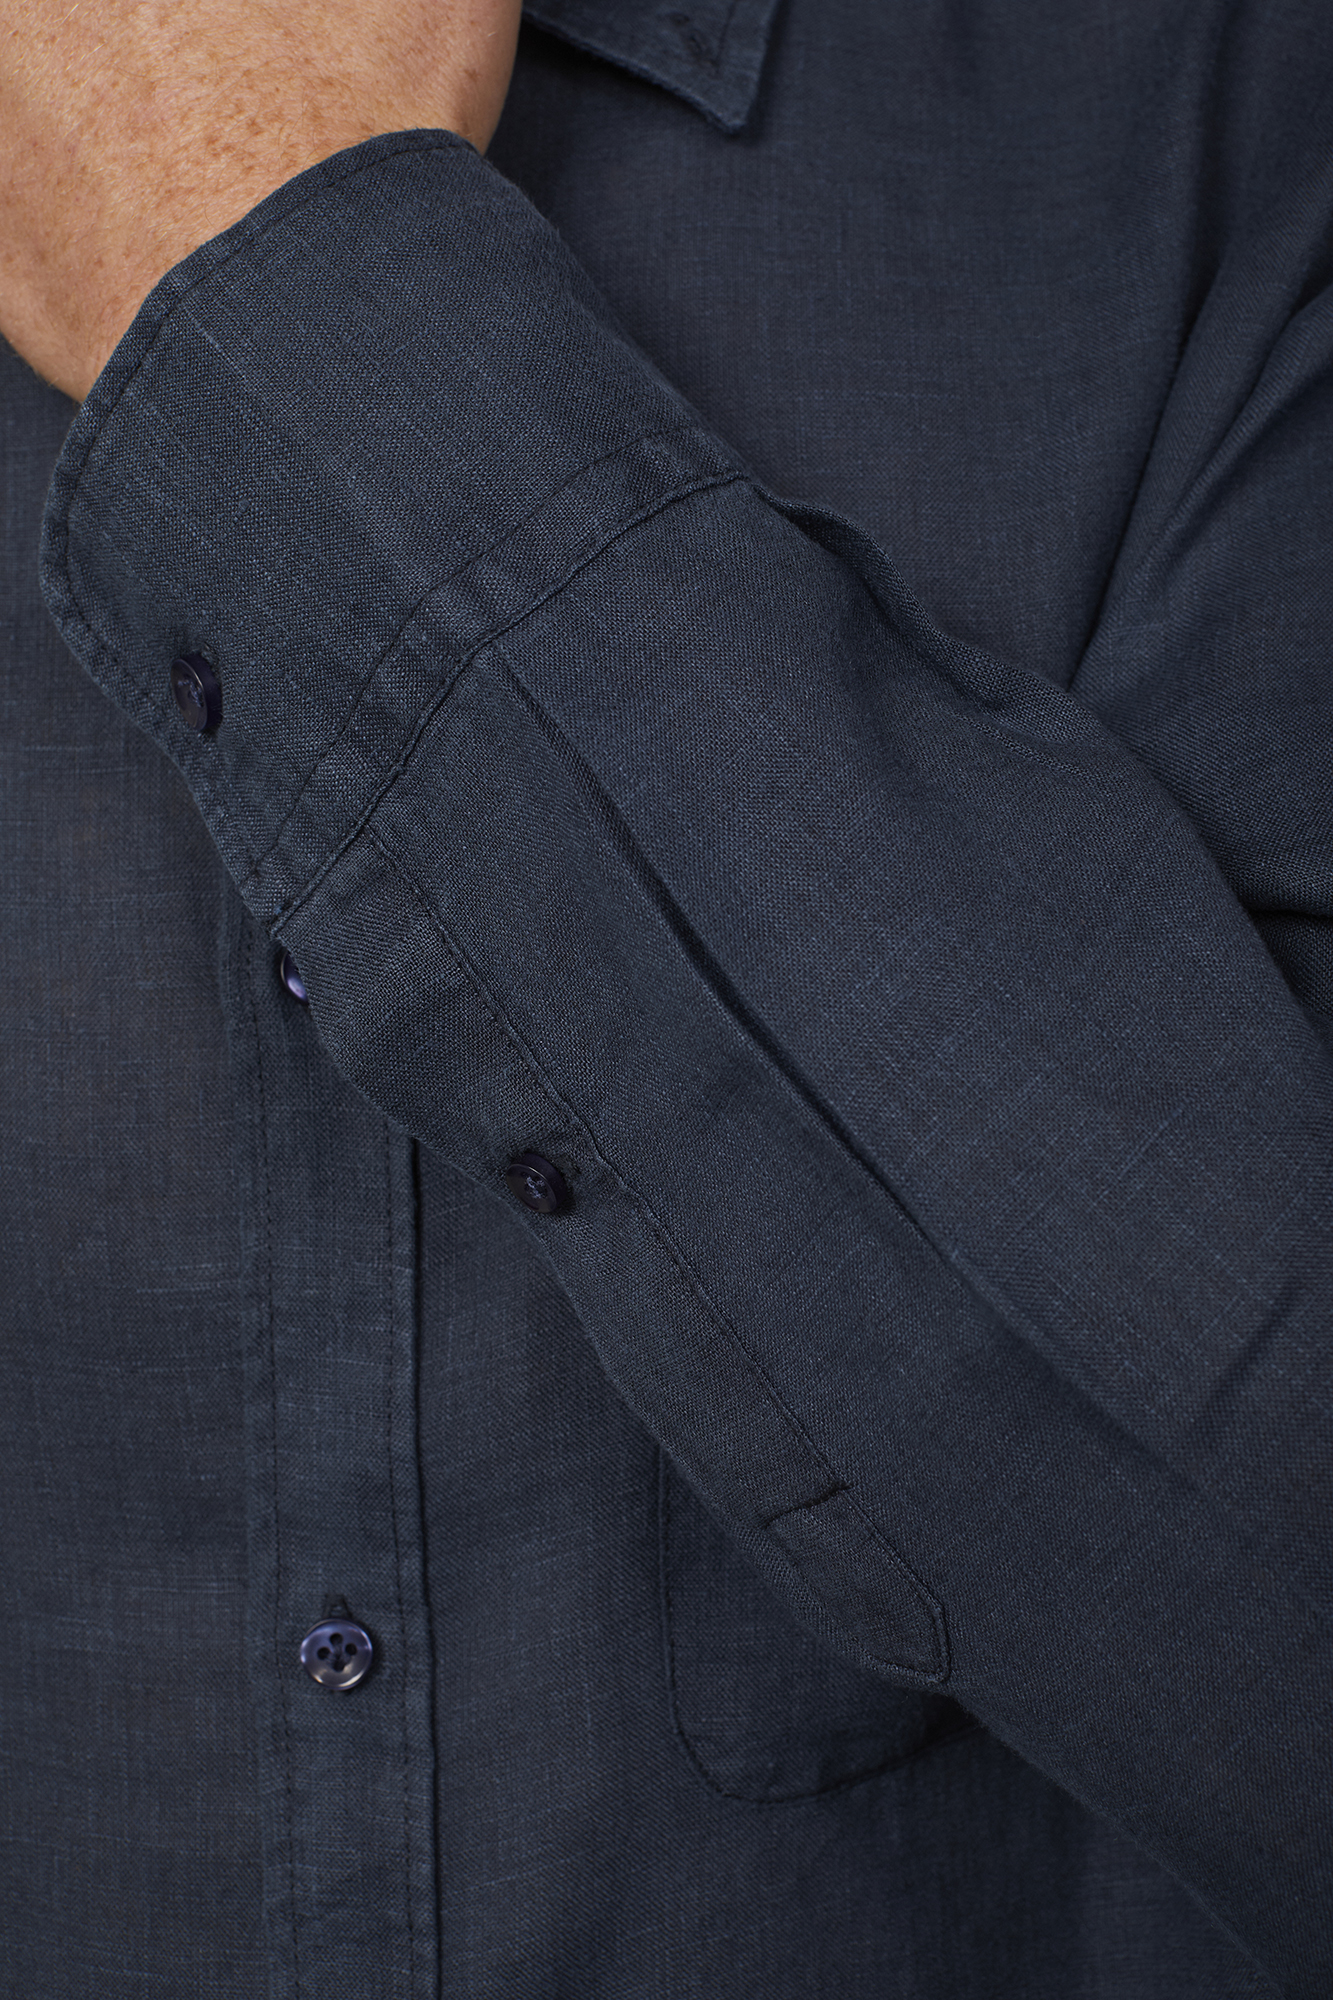 Camicia casual uomo collo button down 100% lino comfort fit image number null